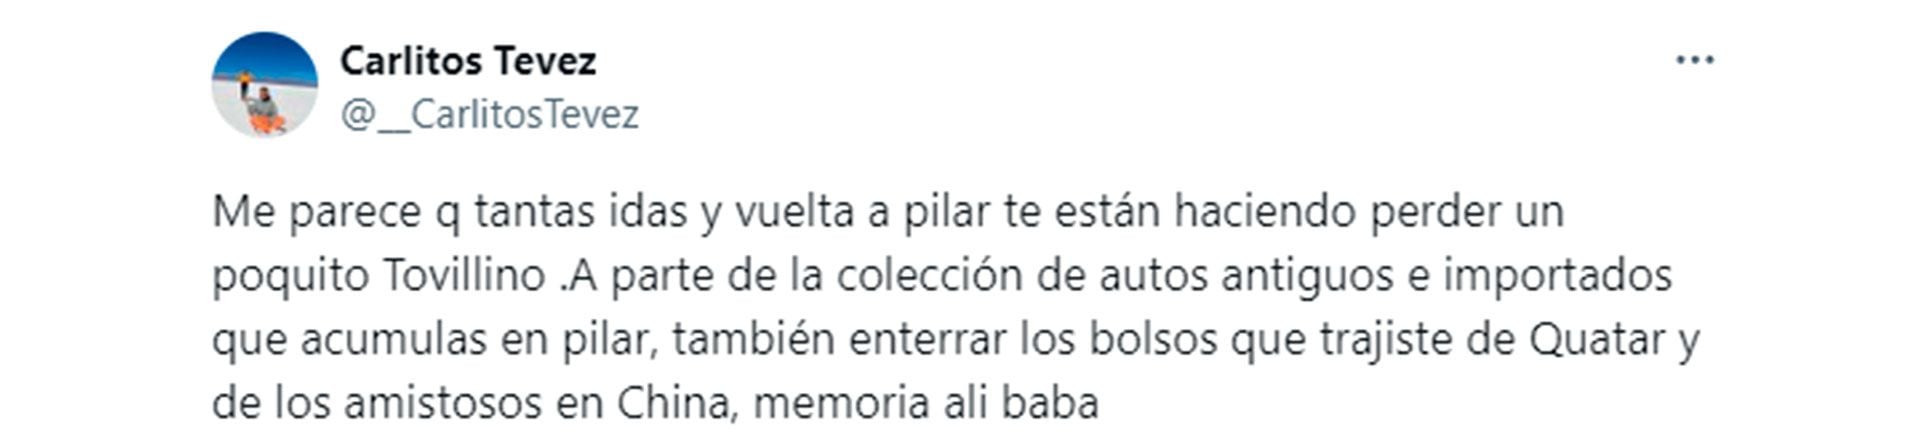 El posteo de Carlos Tevez tras el partido de Independiente